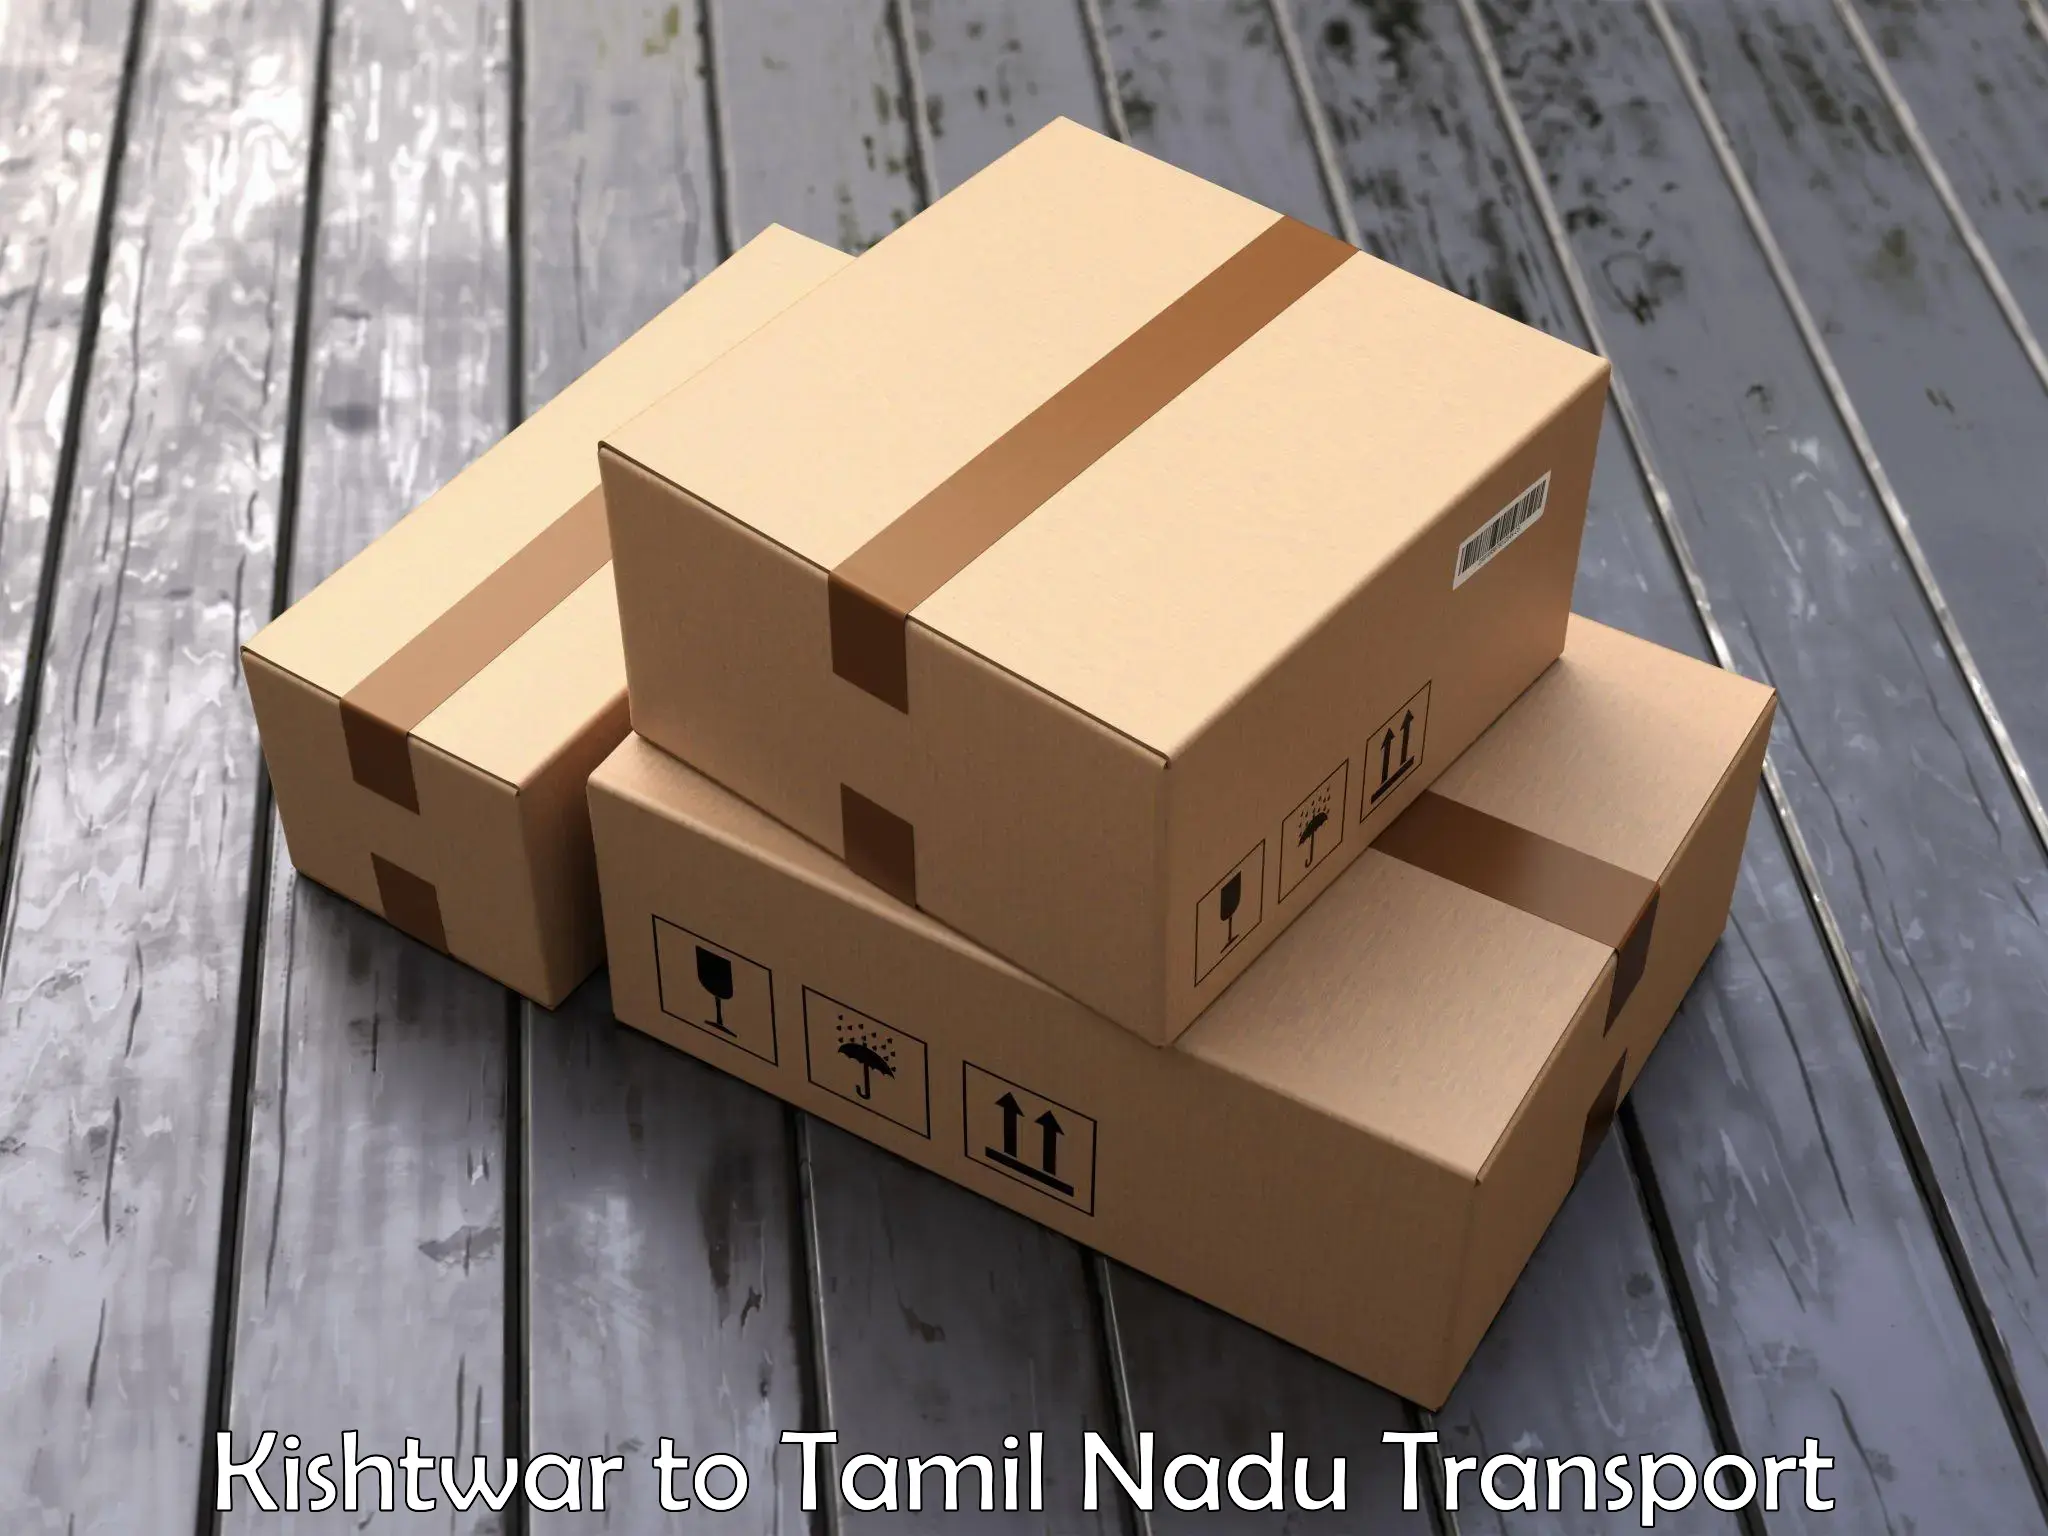 Goods delivery service Kishtwar to Ottapidaram